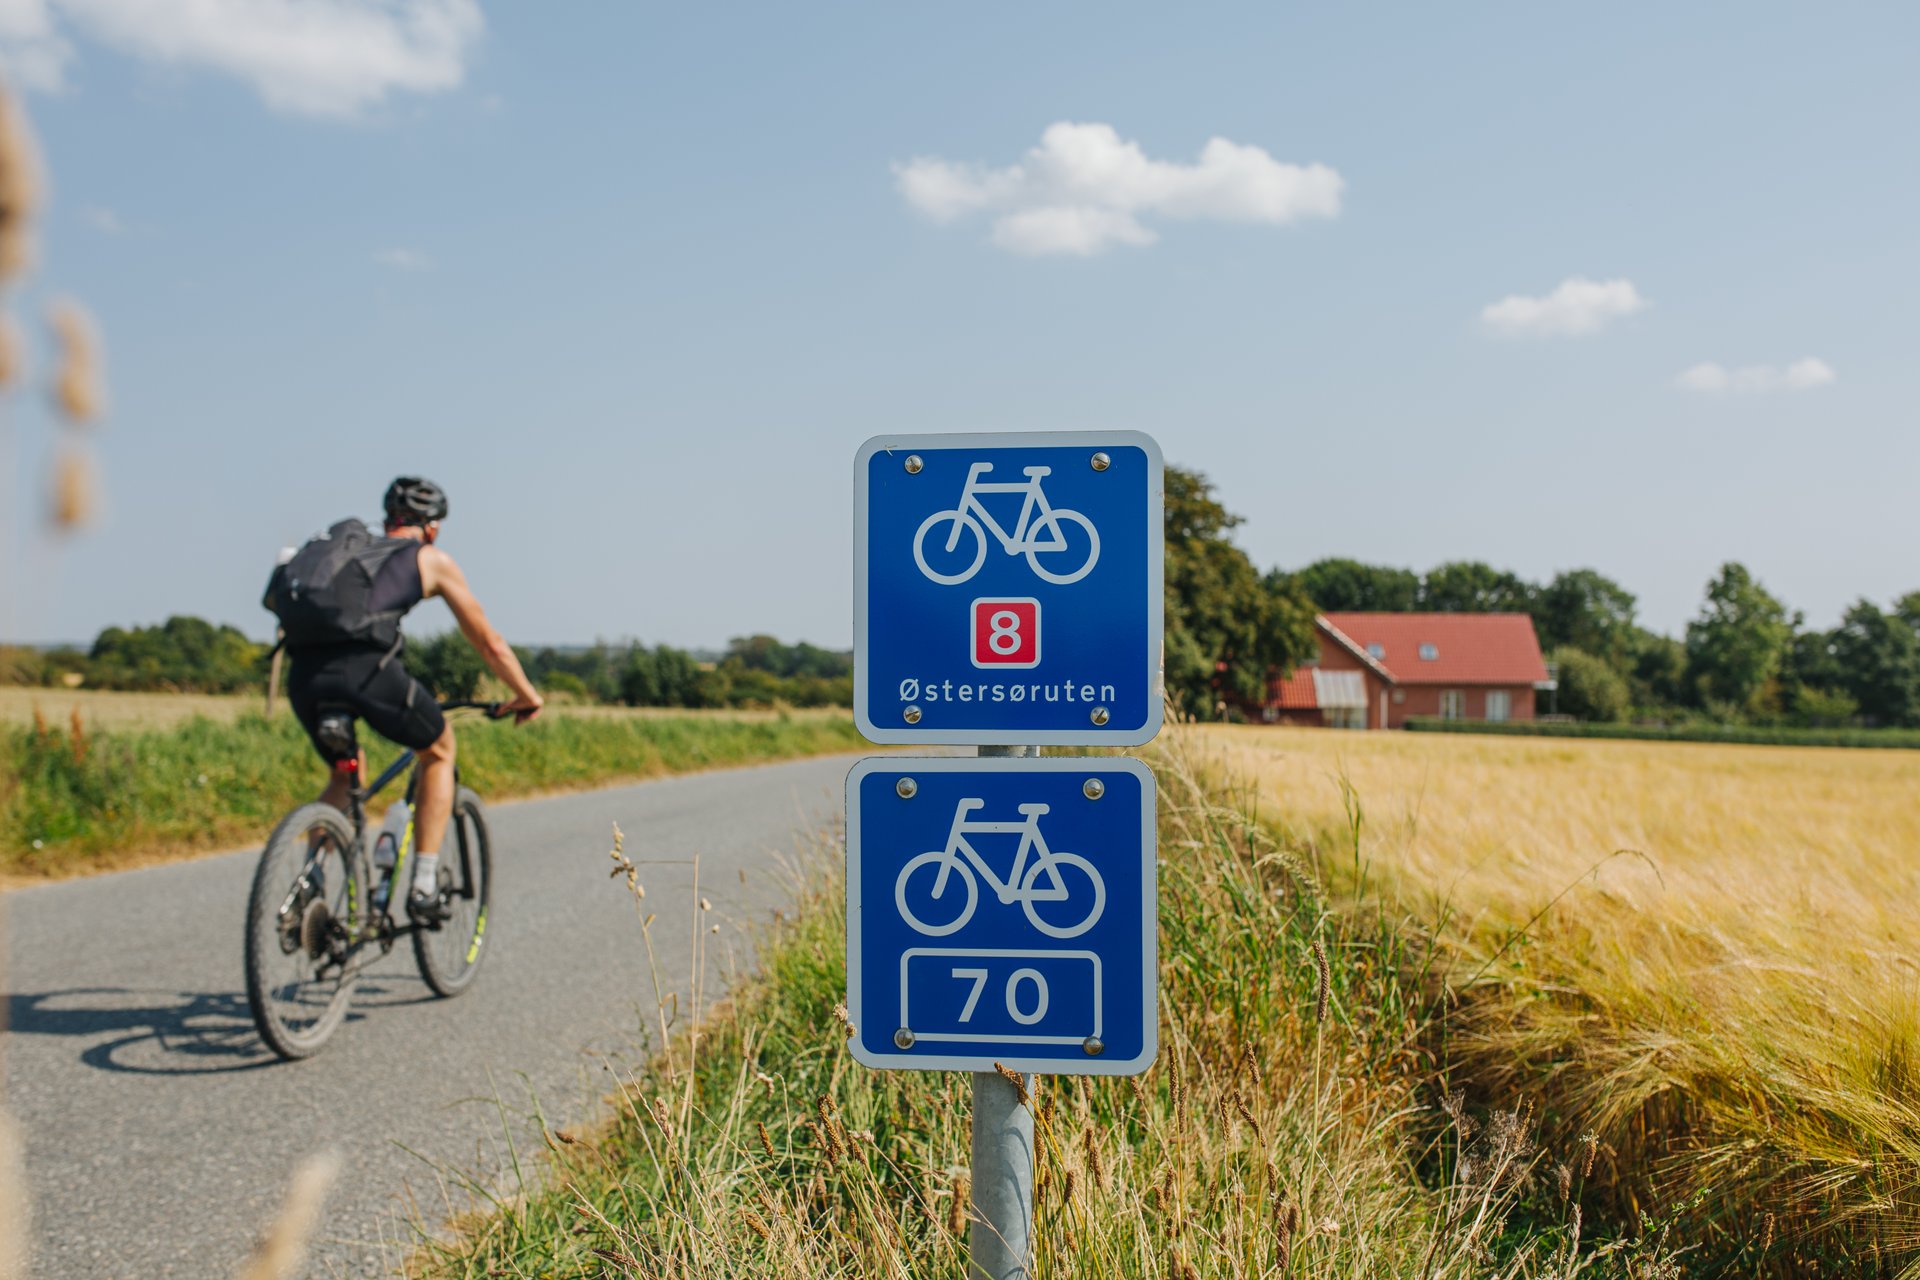 Danmarks nationale cykelruter – en vision for fremtiden